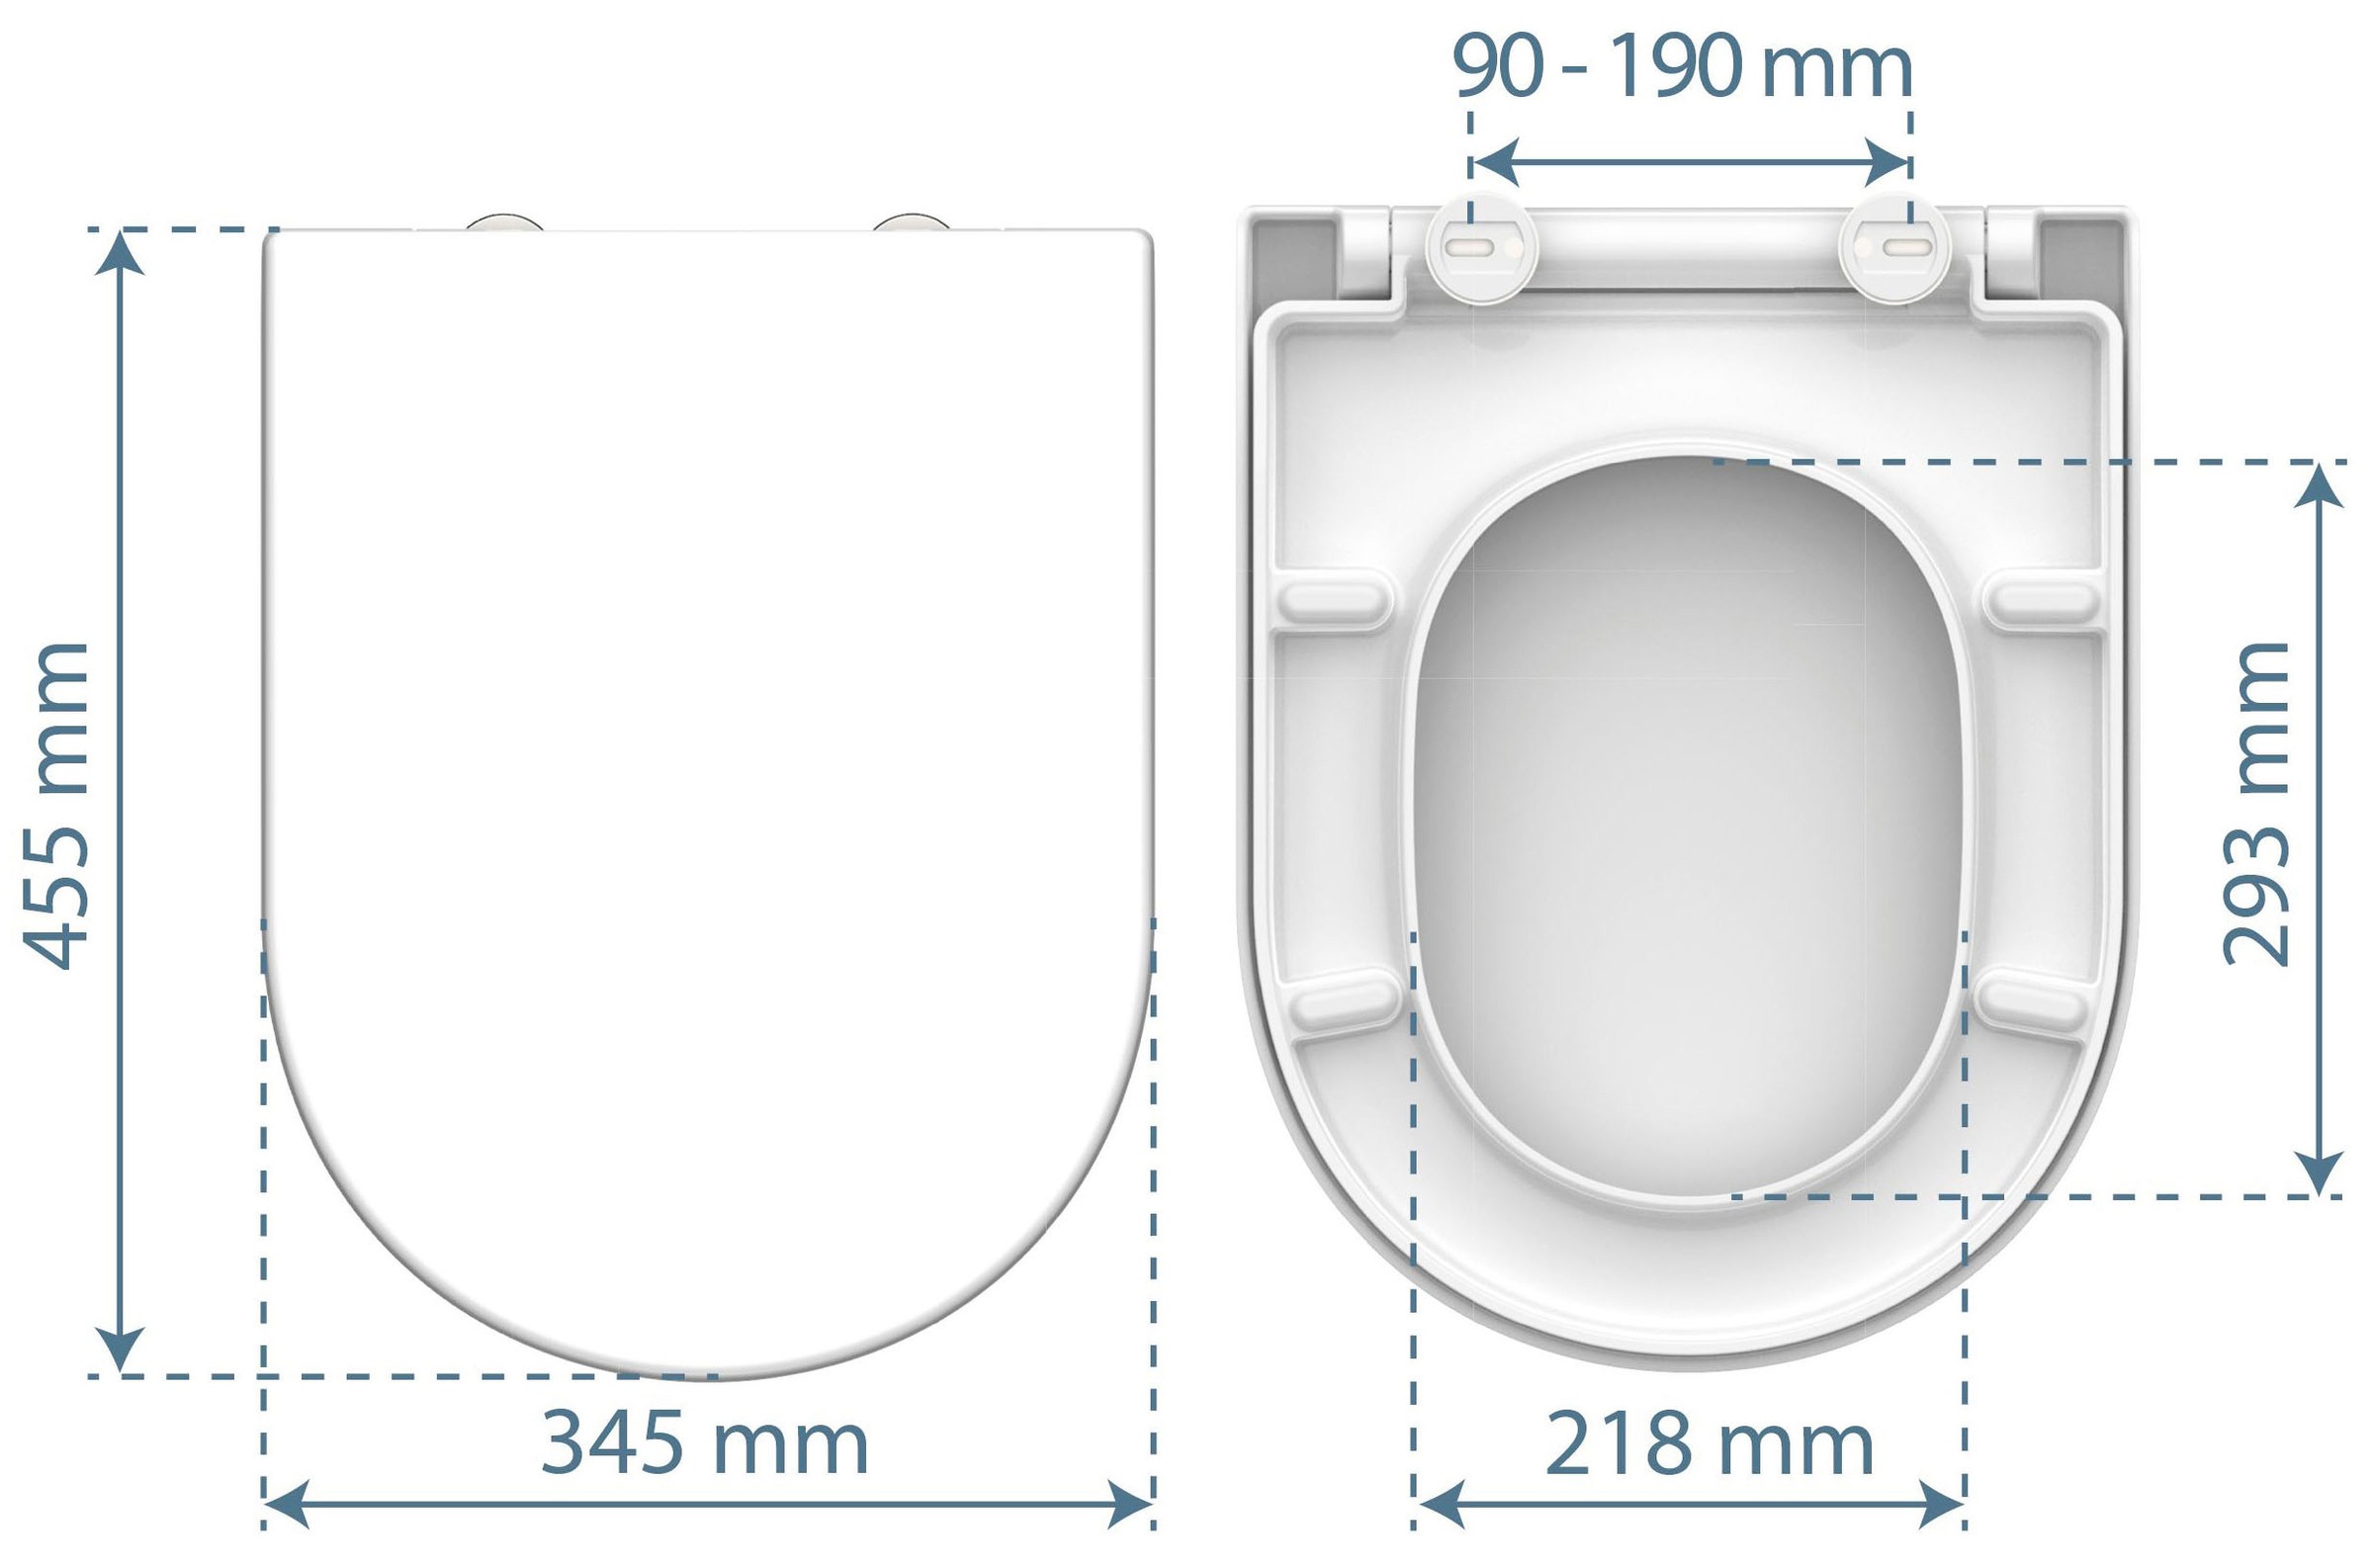 WC-Sitz D-Form WHITE • Duroplast • Mit Absenkautomatik • SCHÜTTE